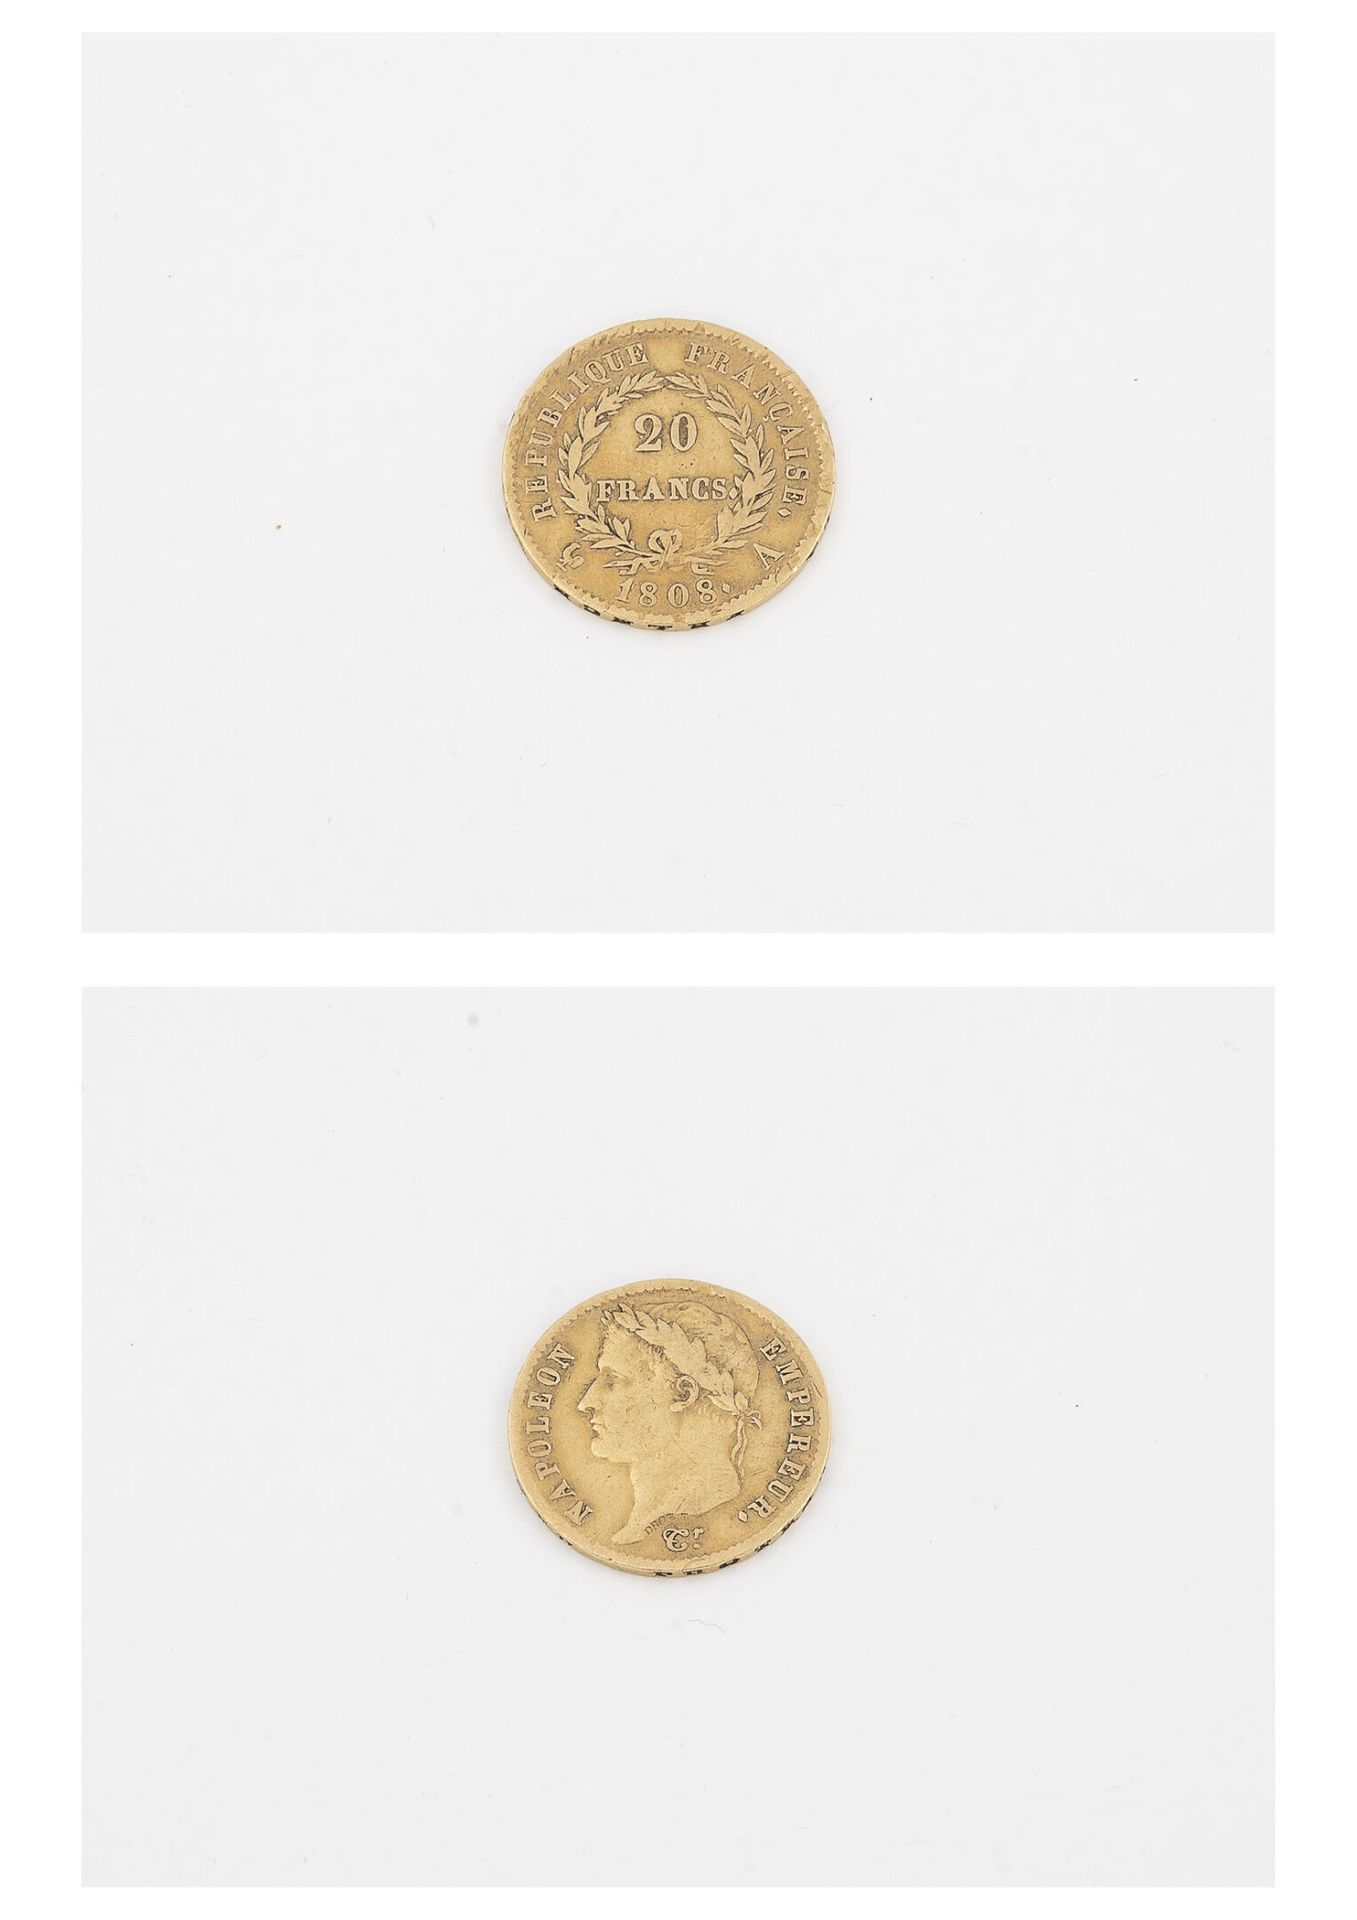 France Moneta d'oro da 20 franchi, 1808, Napoleone Imperatore. 

Peso: 6,4 g. 

&hellip;